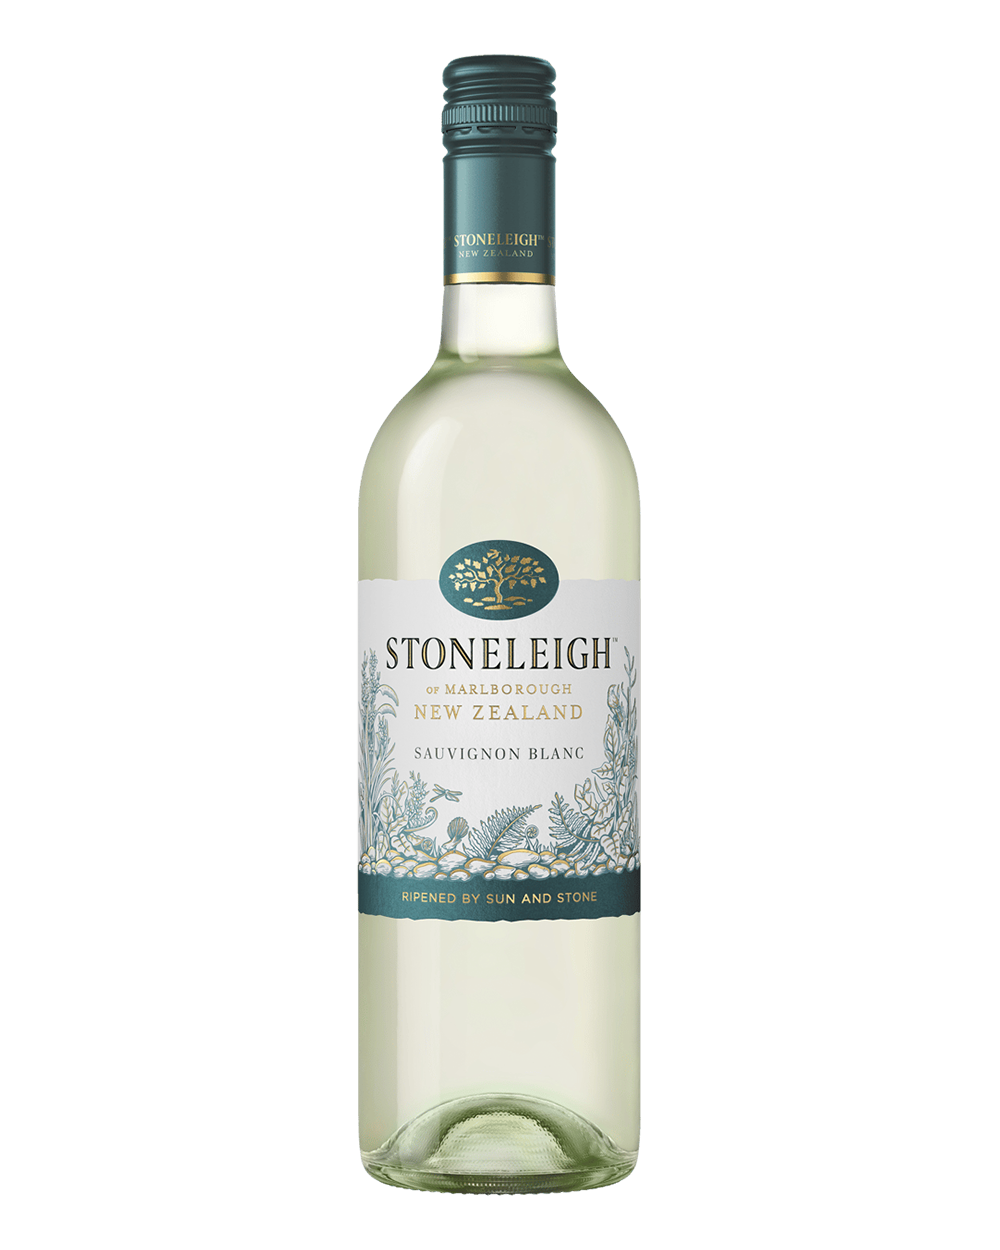 Stoneleigh Sauvignon Blanc